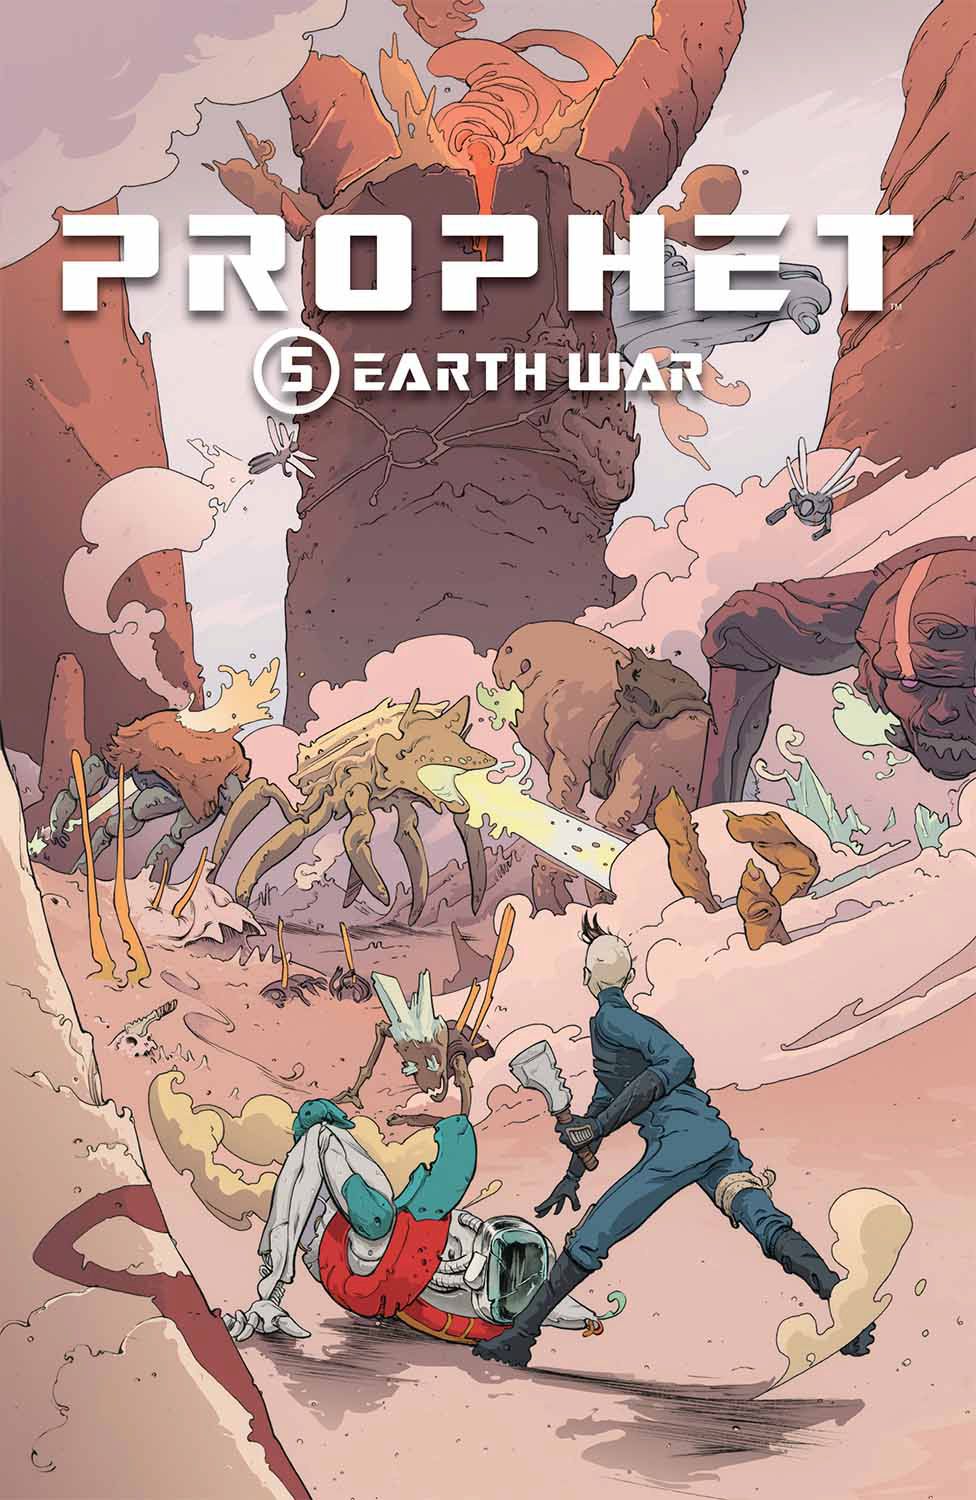 Prophet TP VOL 05 Earth War